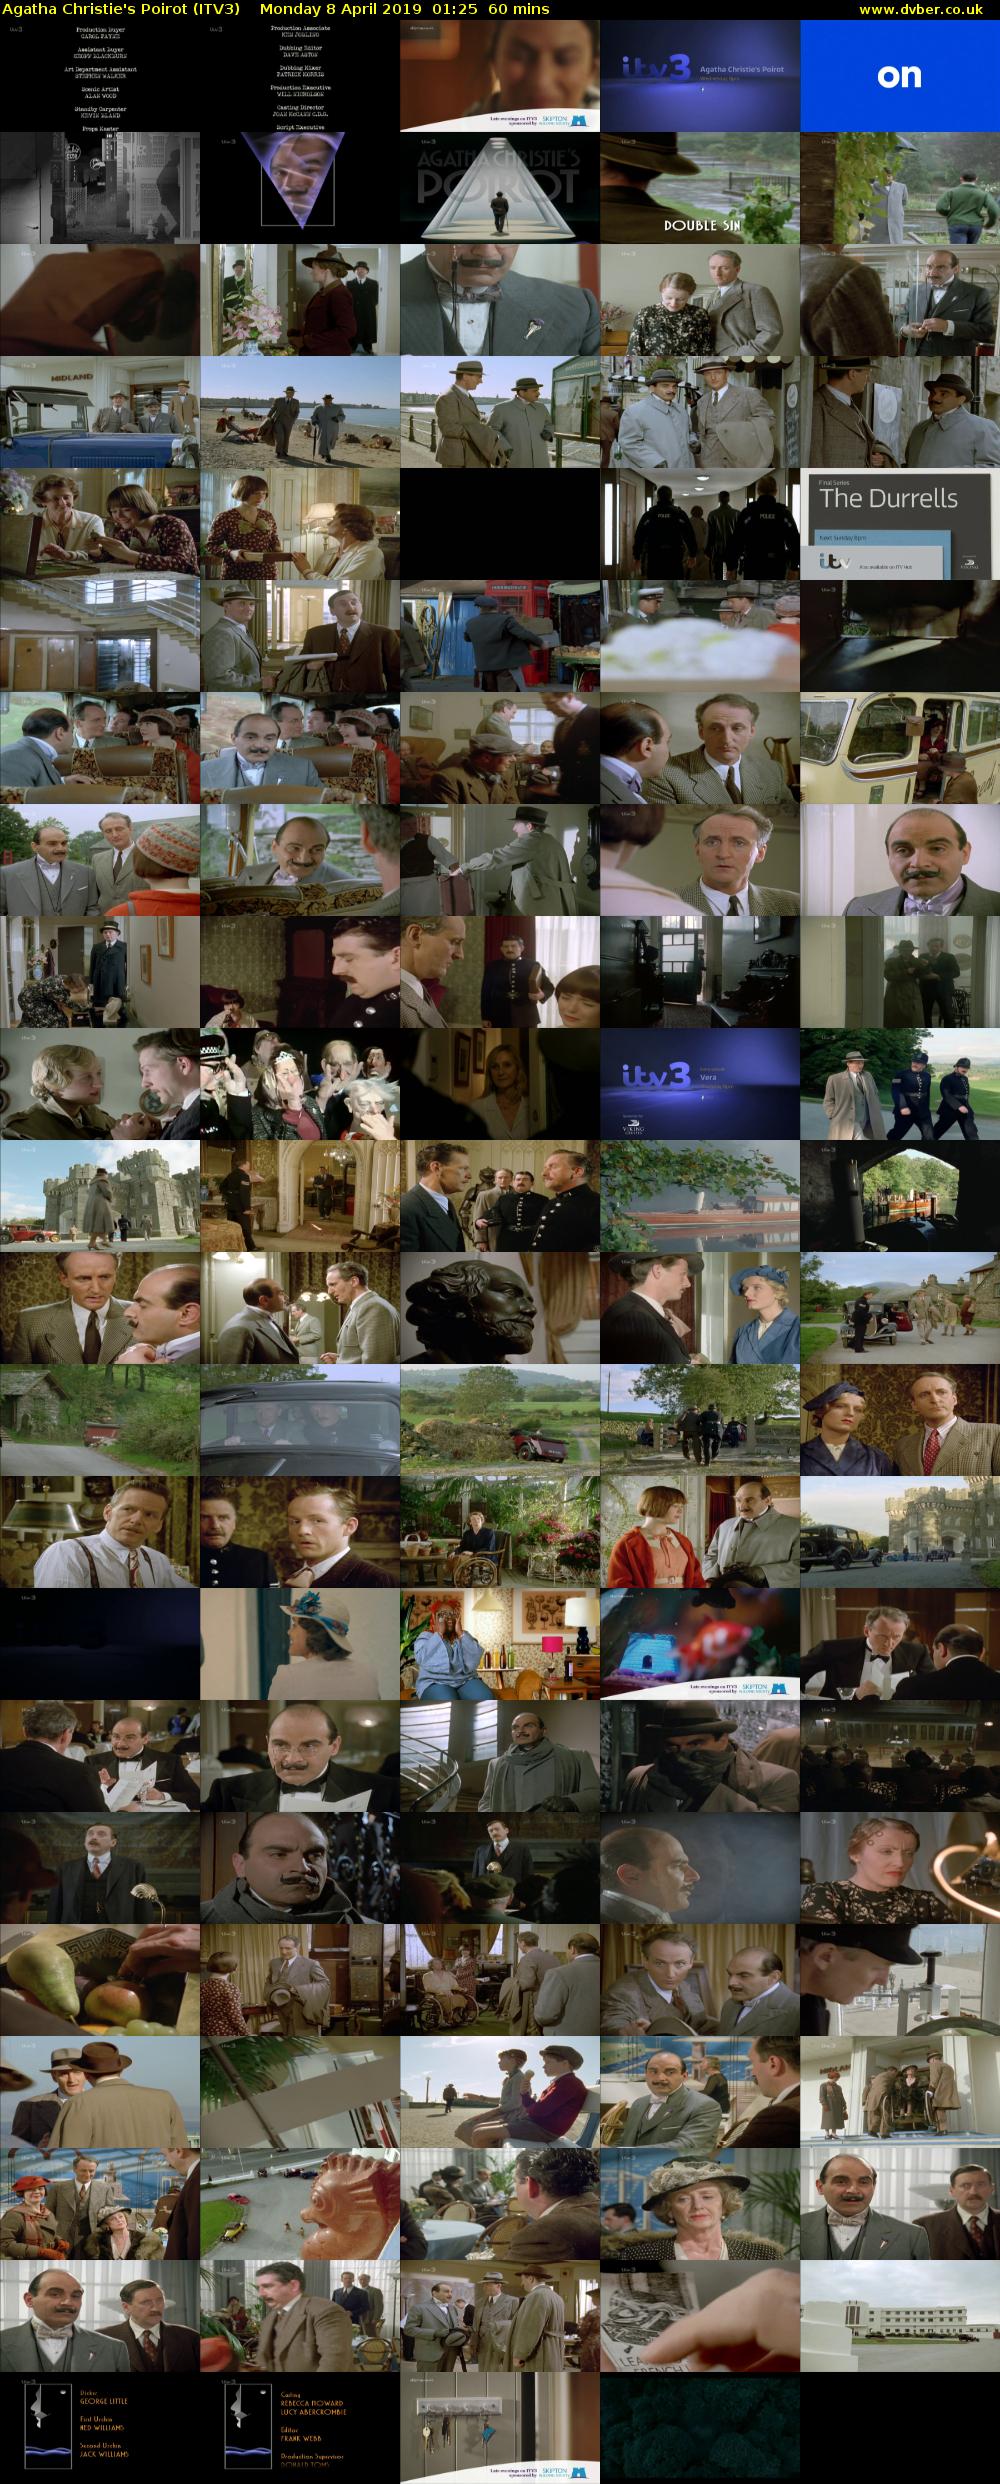 Agatha Christie's Poirot (ITV3) Monday 8 April 2019 01:25 - 02:25